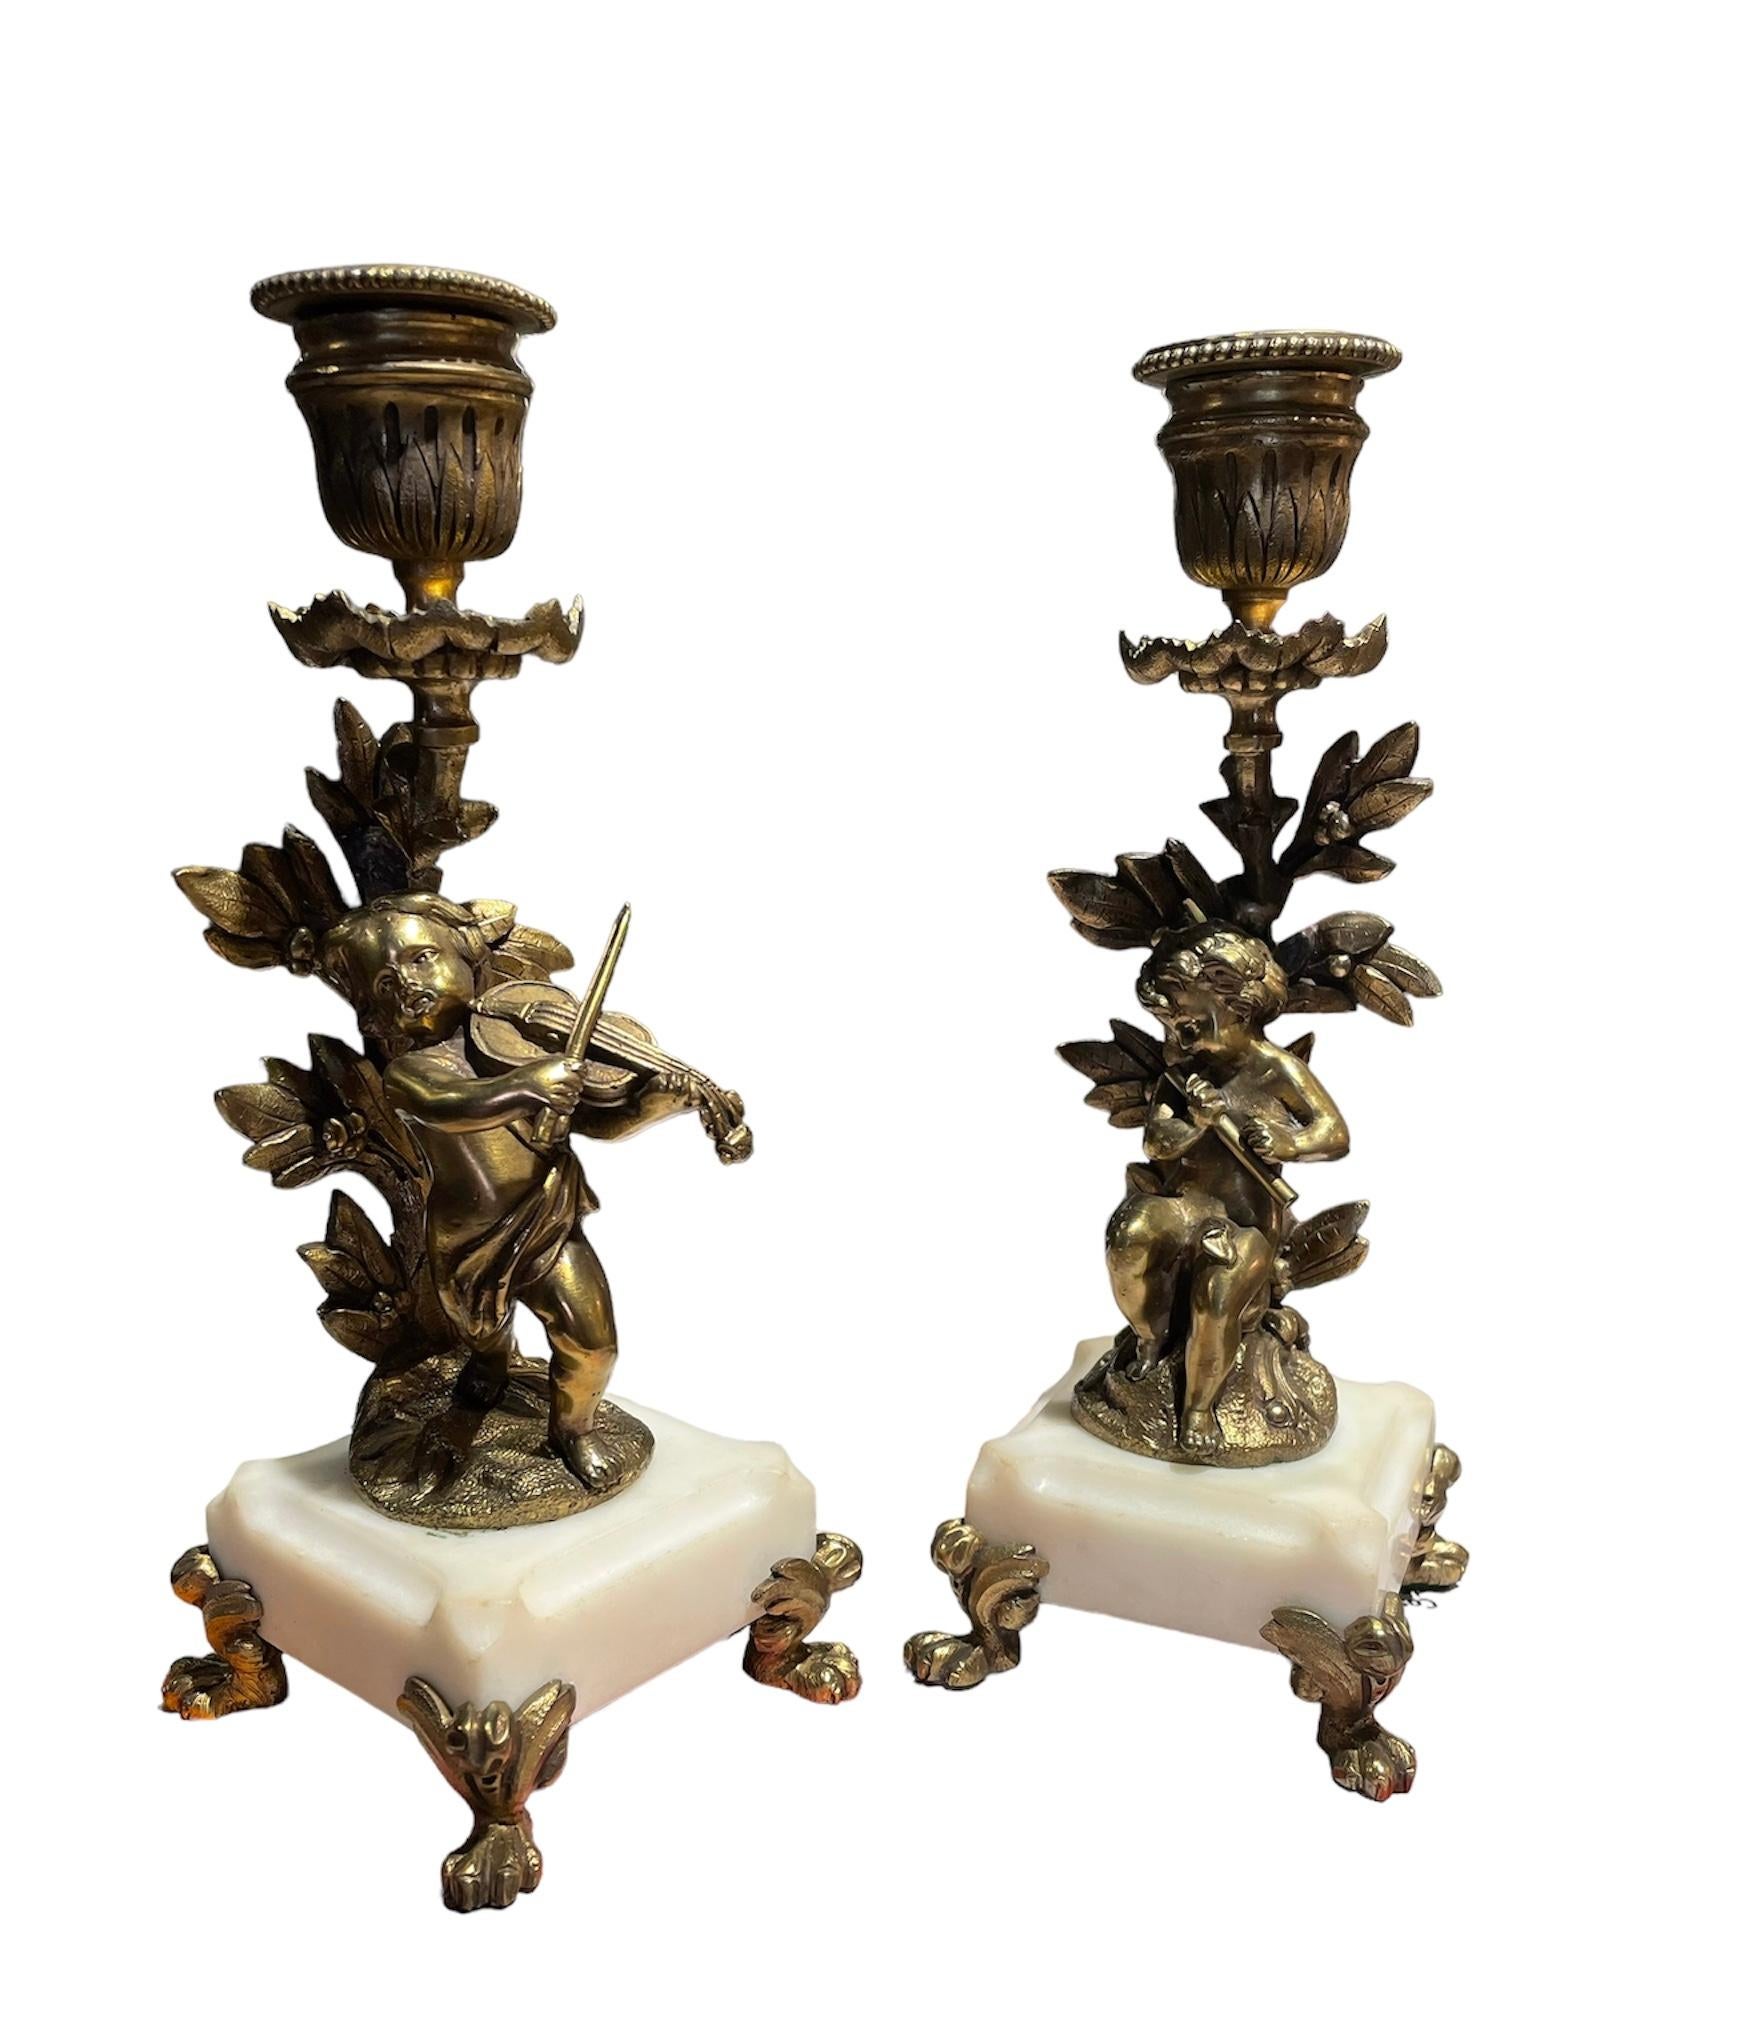 Dies ist ein Paar vergoldeter Bronze-Kerzenhalter. Auf jedem von ihnen ist ein Putto abgebildet, der vor einem Lorbeerbaum ein Instrument spielt. Einer spielt Geige und der andere Flöte. Aus einem der Lorbeerzweige kommt der Kerzenhalter, der